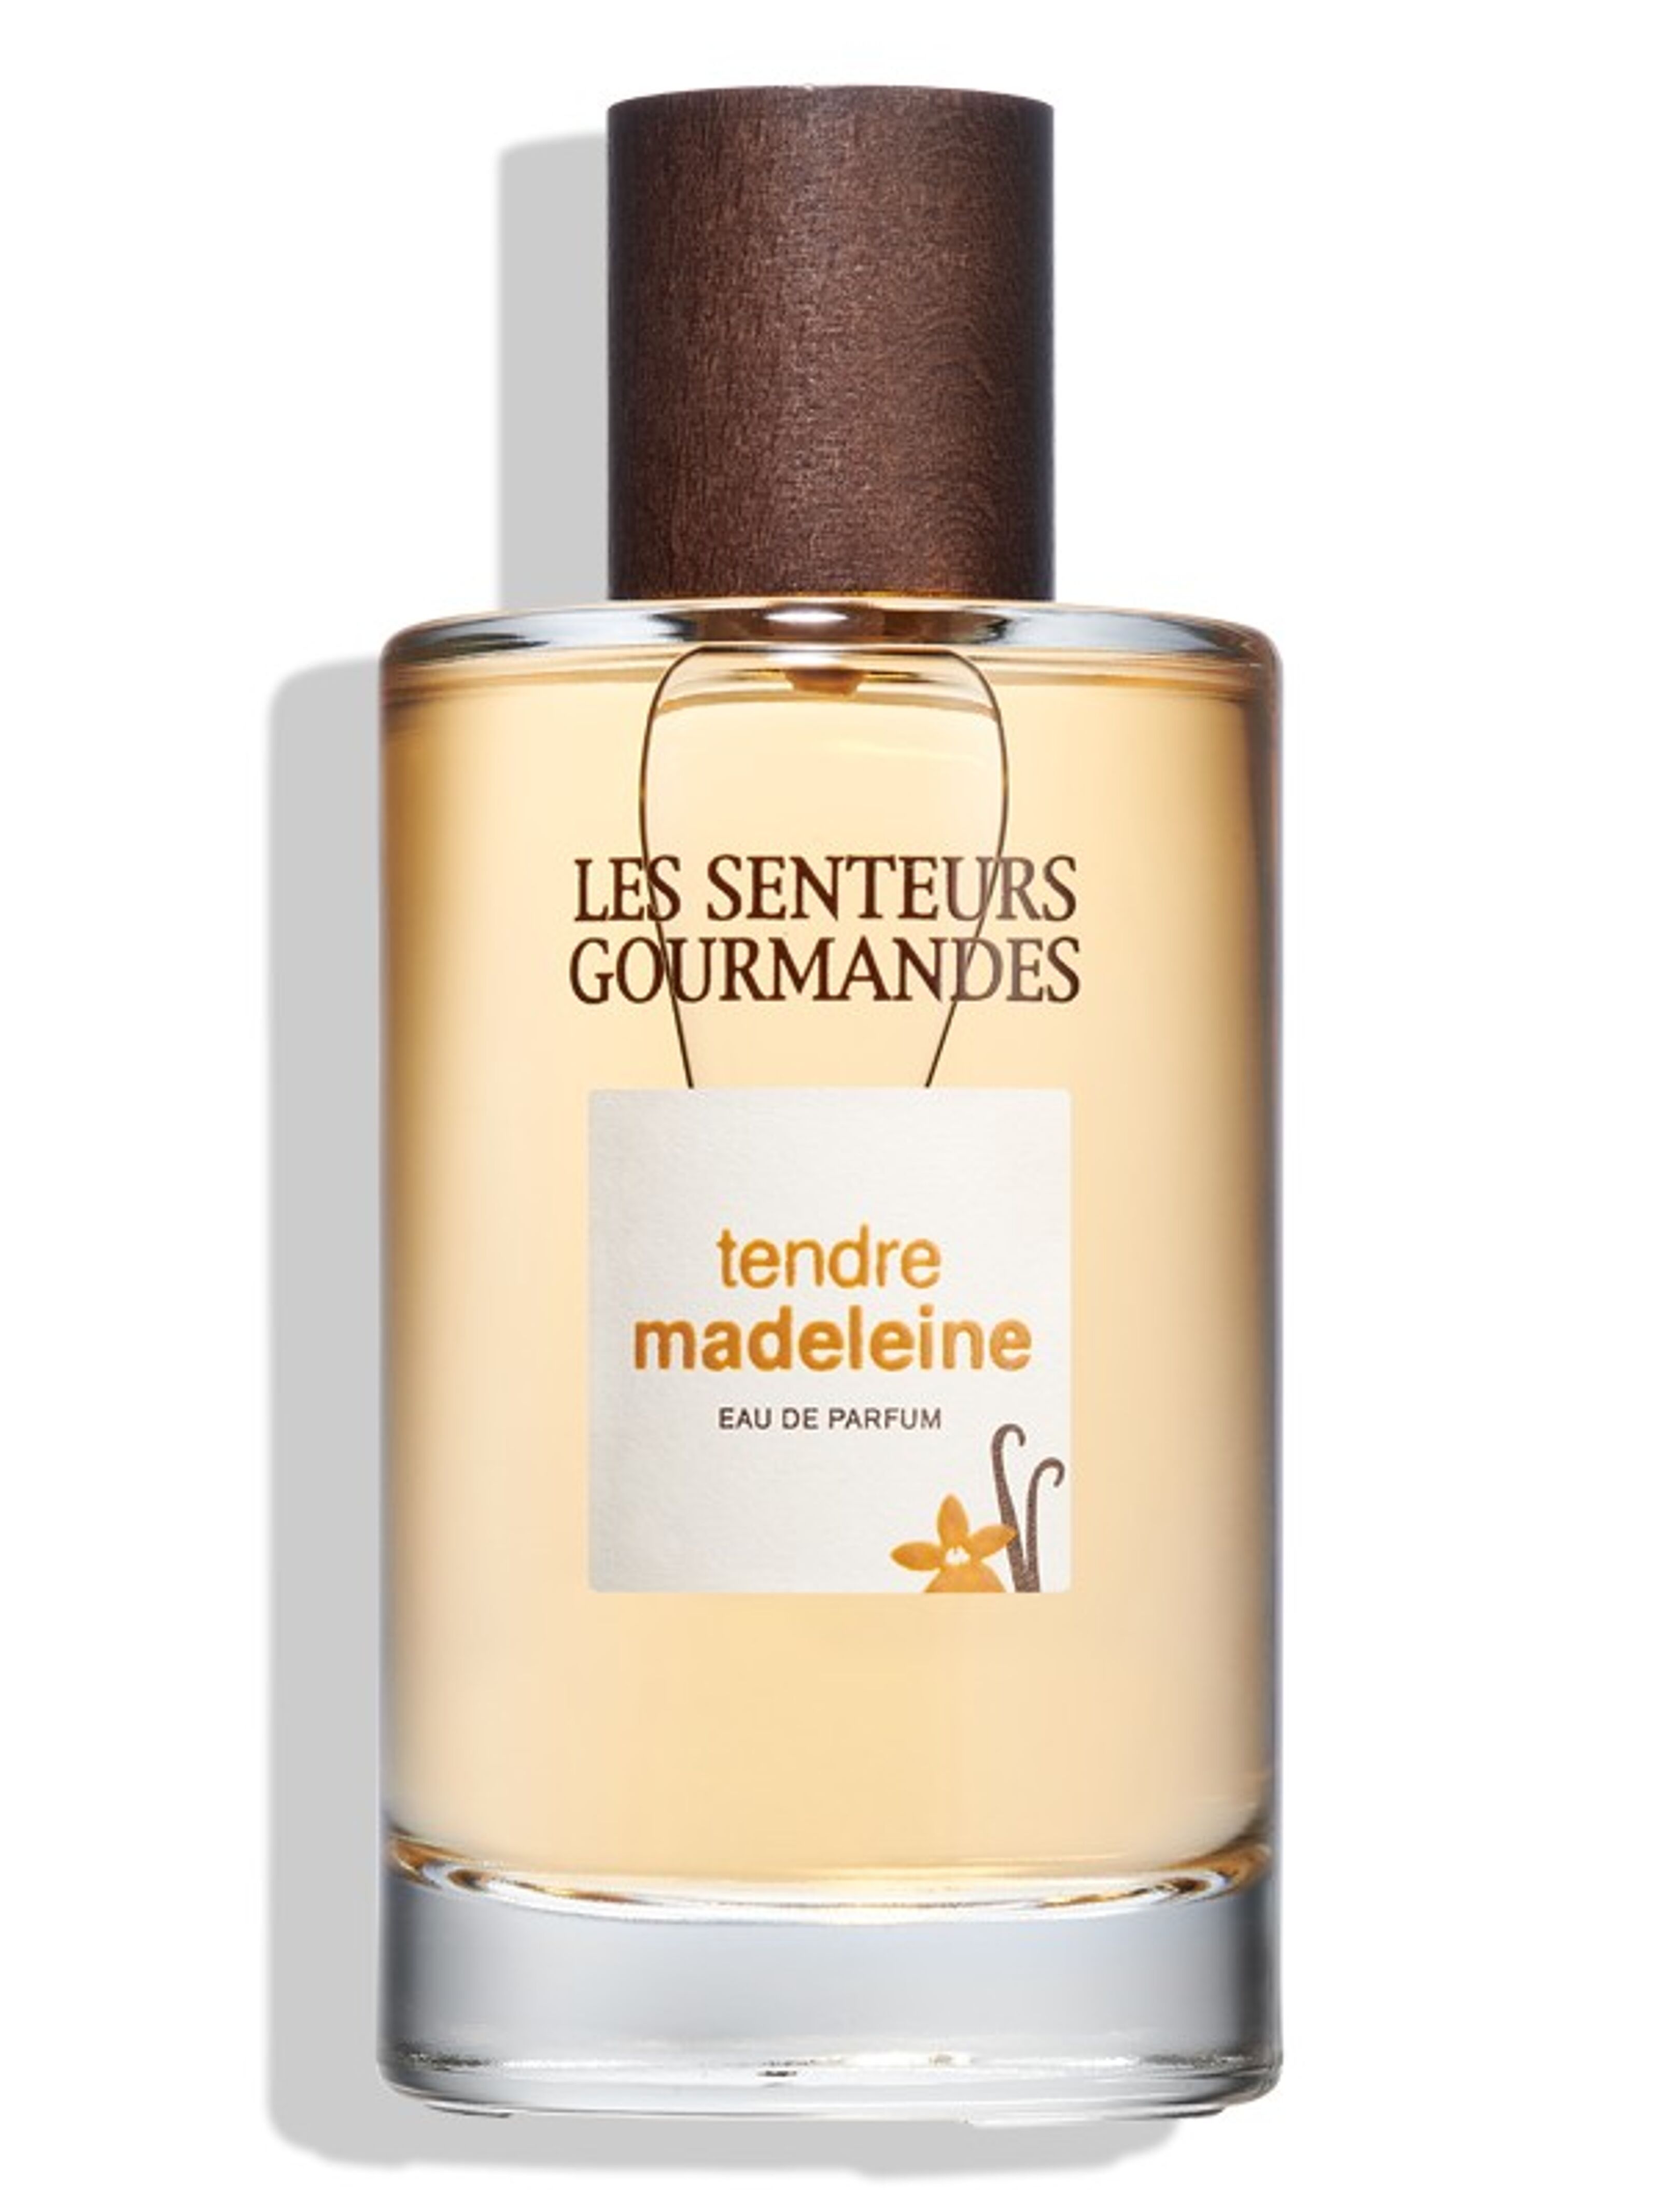 Tendre Madeleine Eau de Parfum 100ml, Les Senteurs Gourmandes